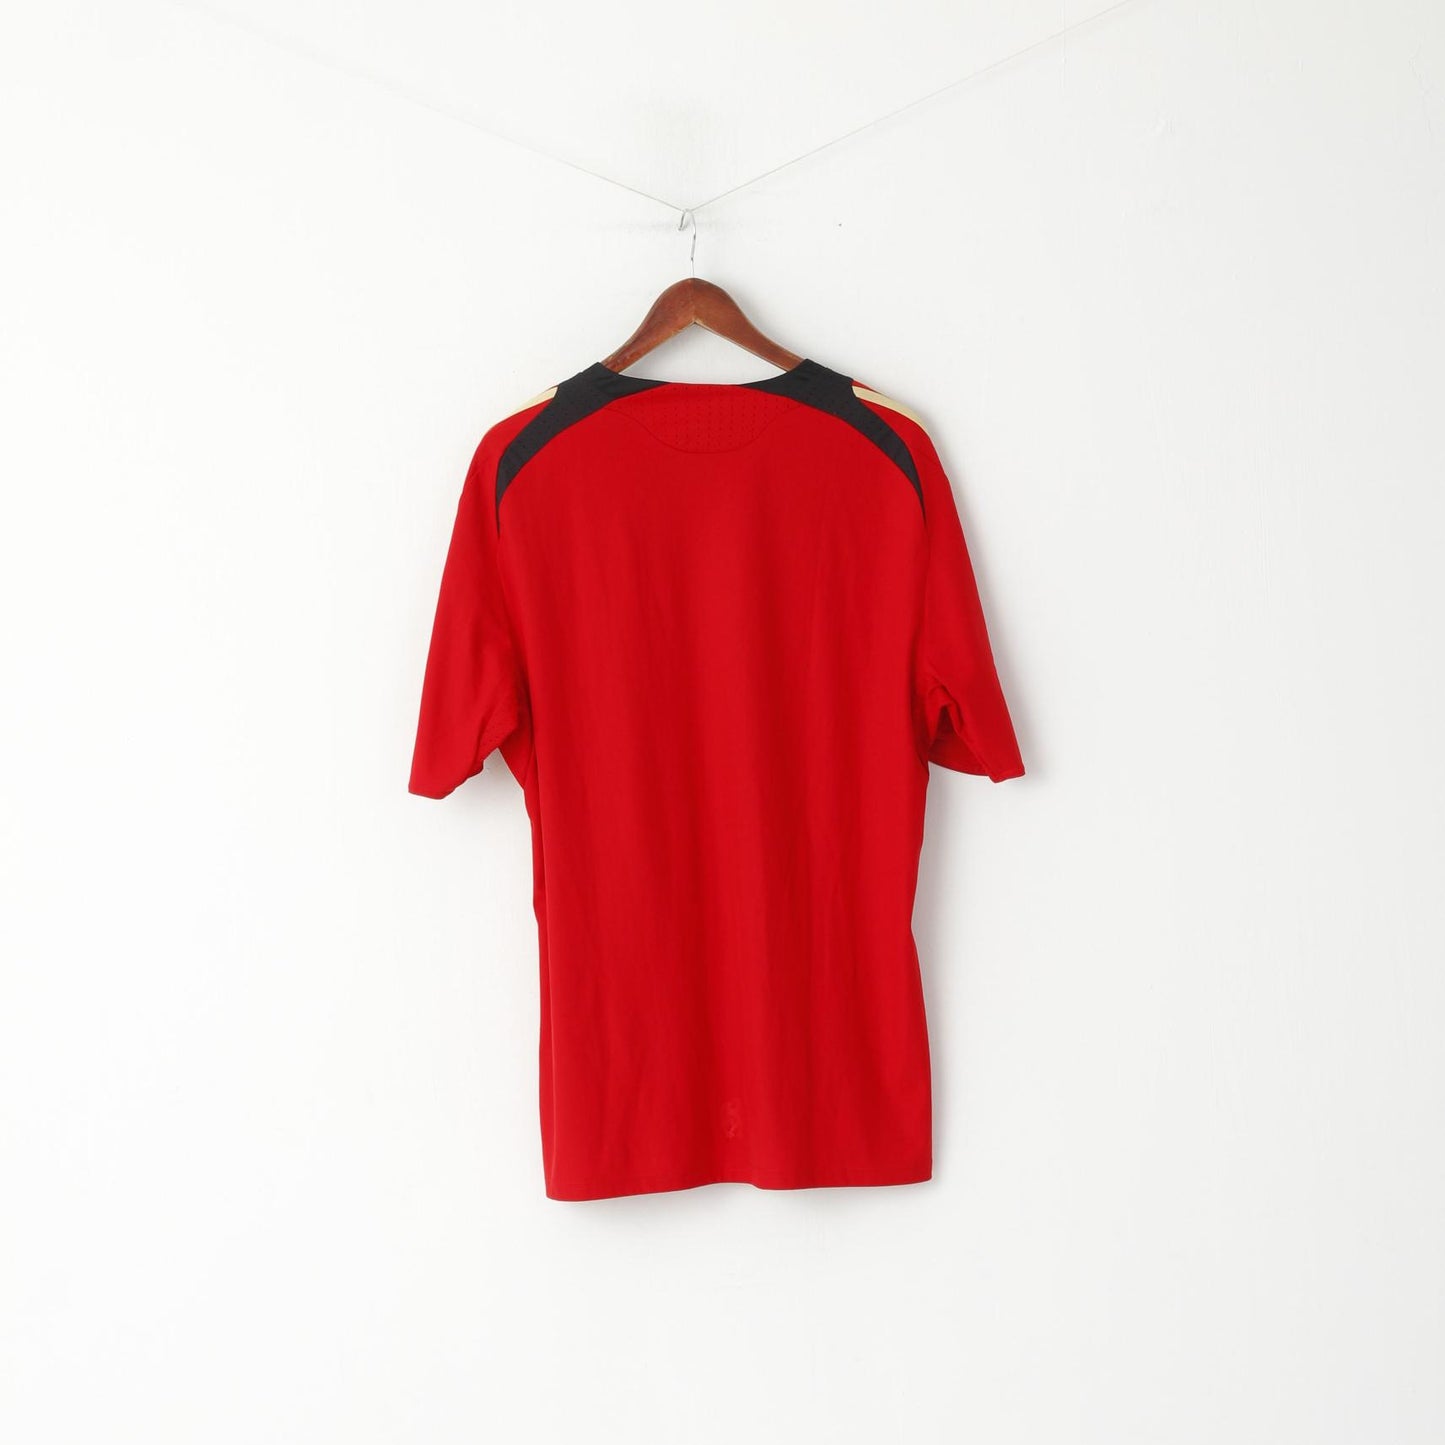 Maglia Adidas da uomo XL rossa Deutscher Fussball Bund maglia da calcio vintage